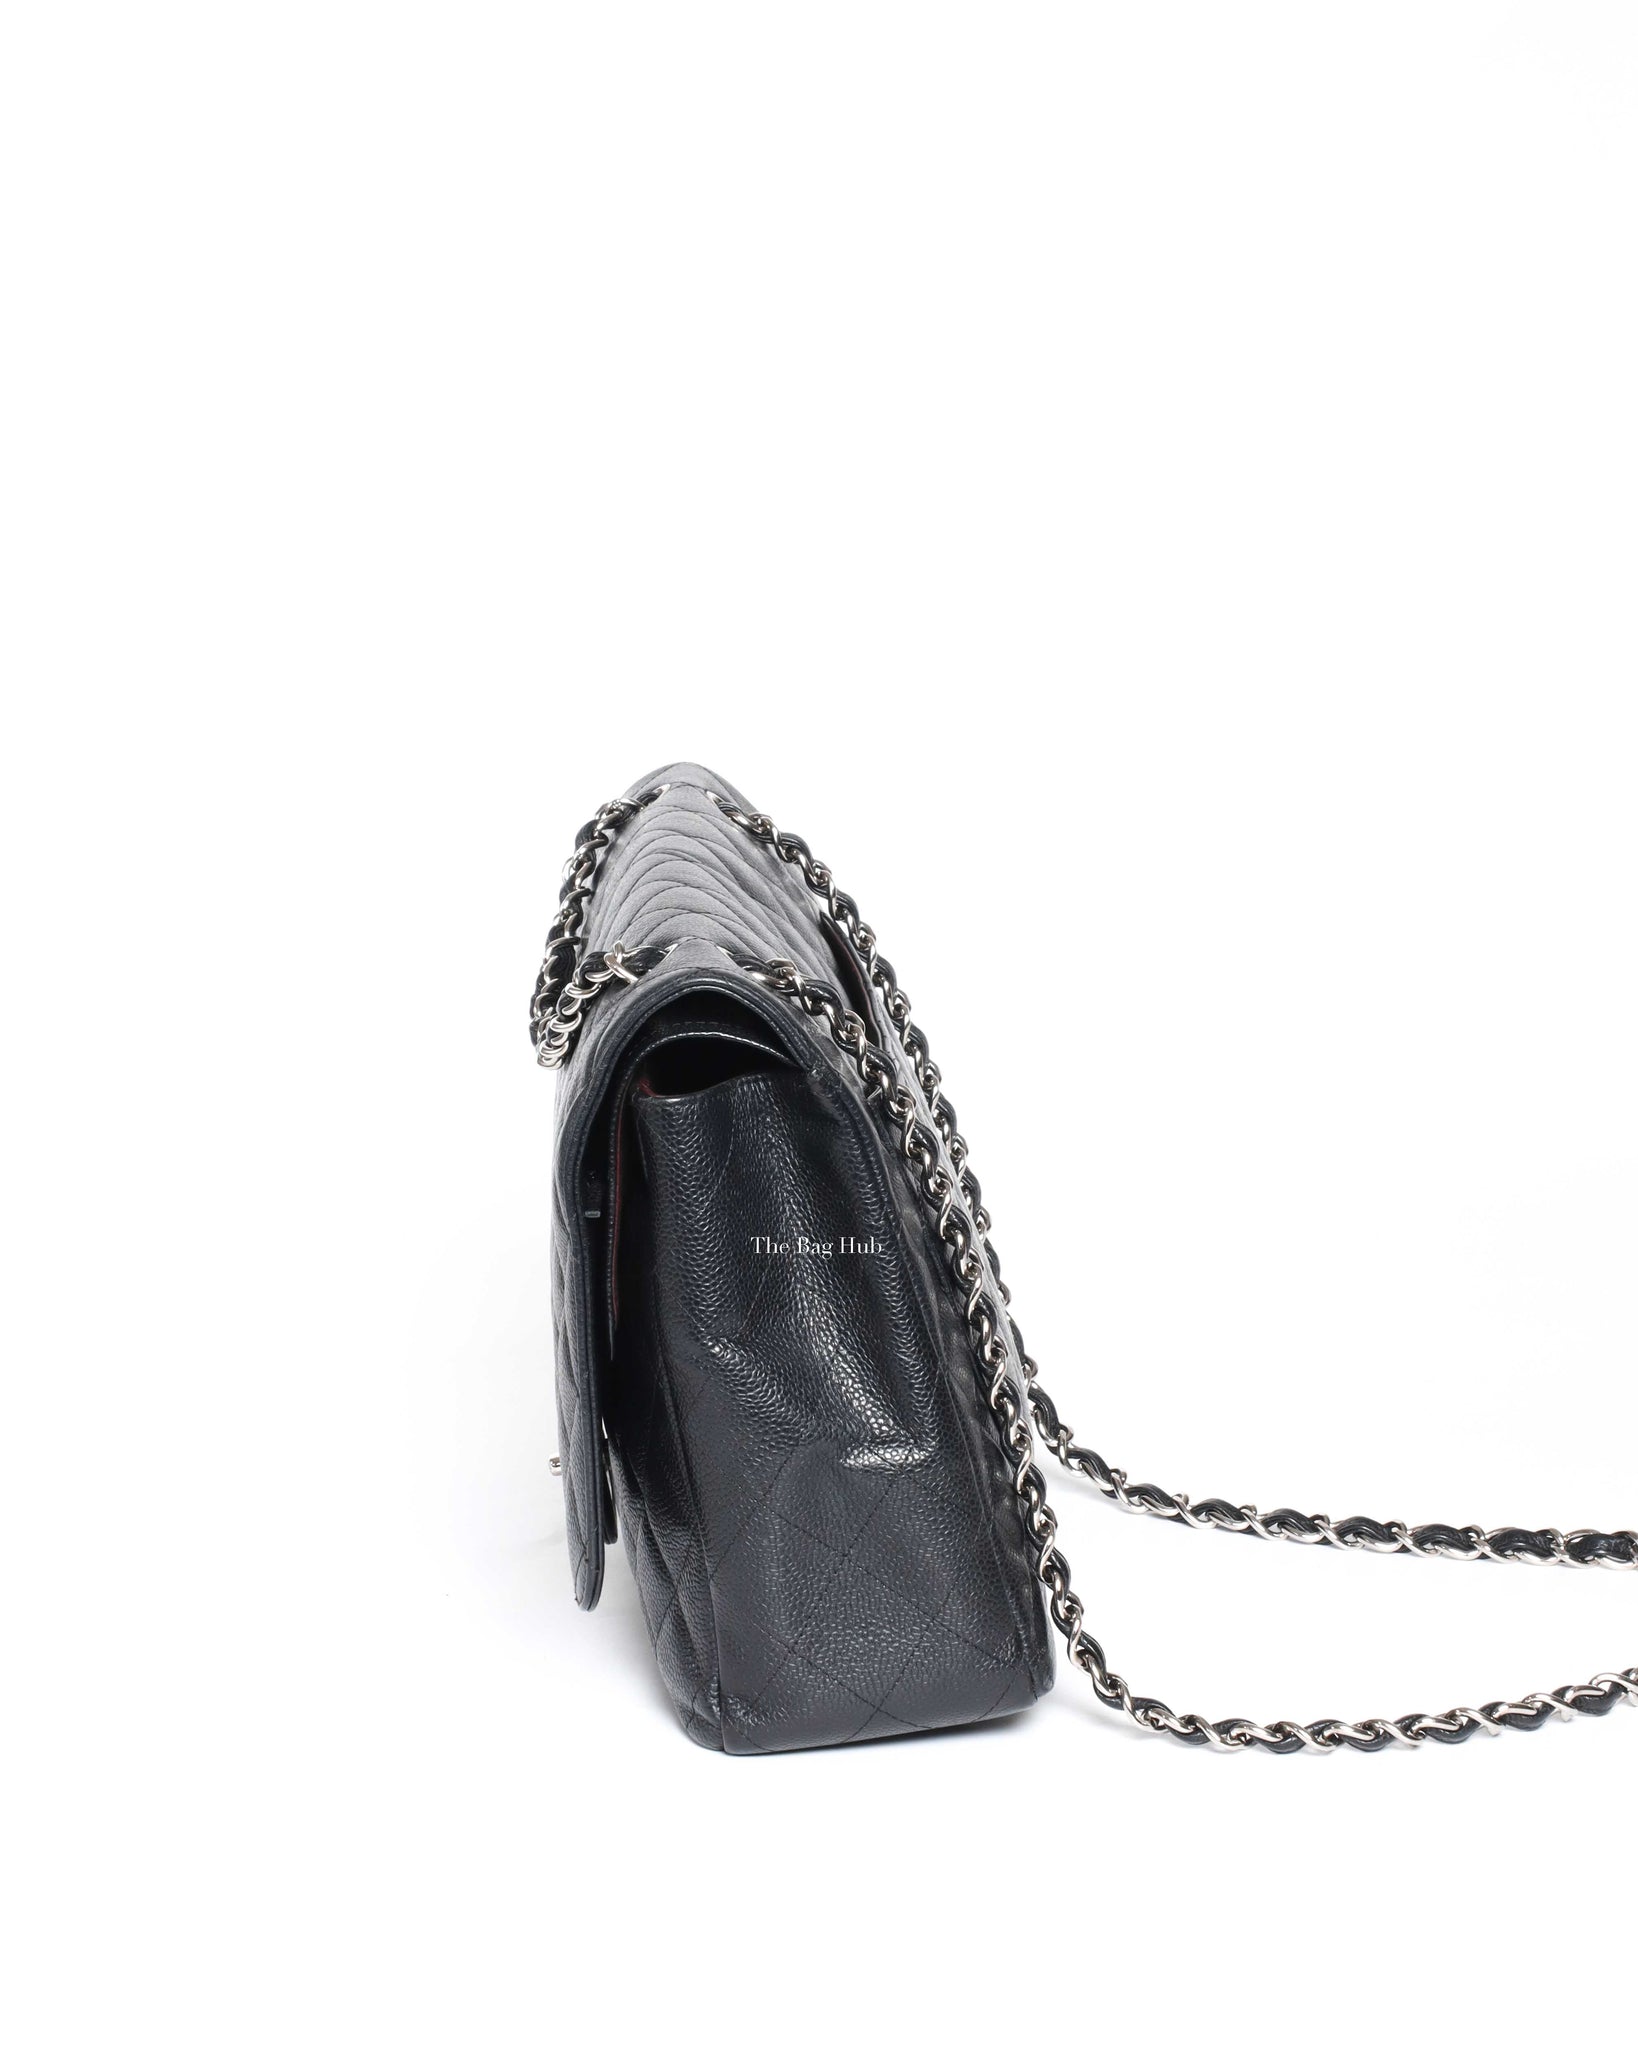 Chanel Black Caviar Maxi Double Flap Shoulder Bag, Designer Brand, Authentic  Chanel